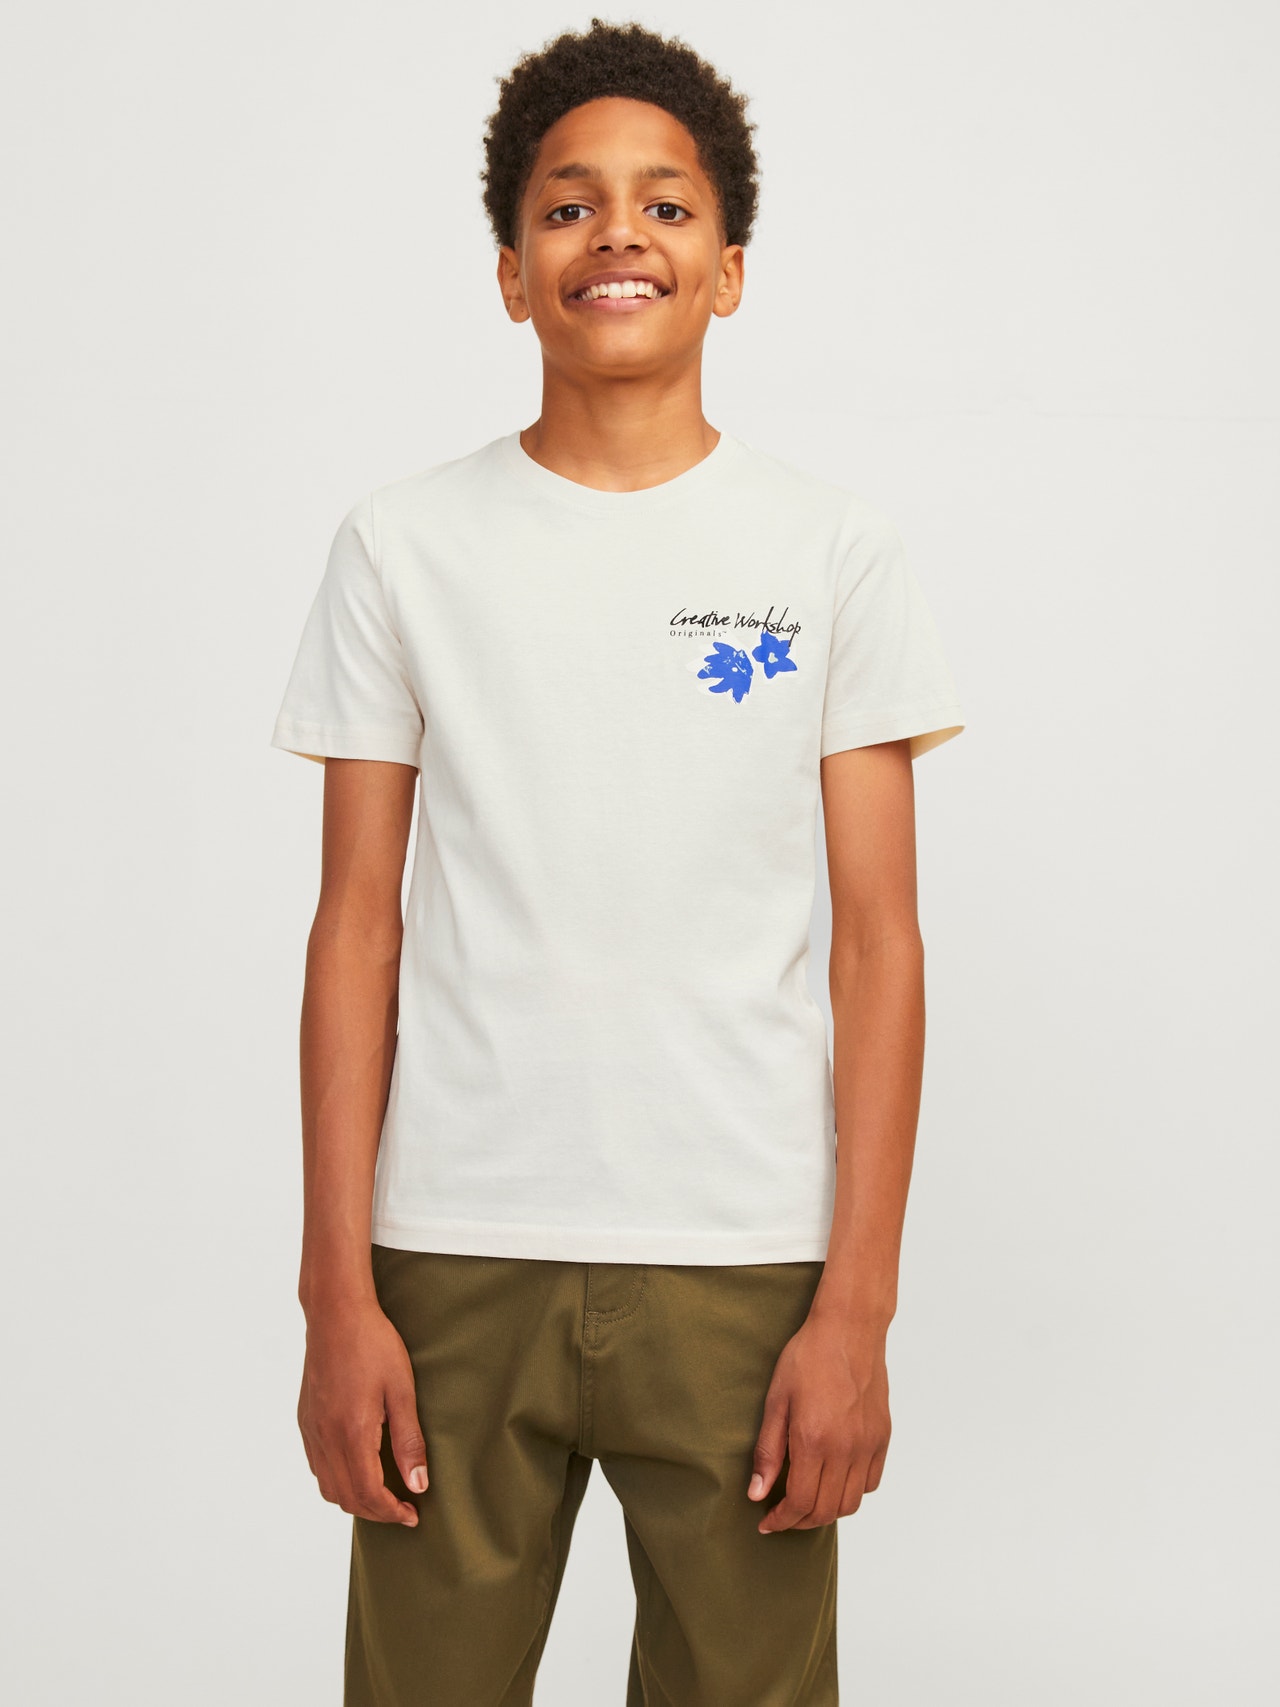 Jack & Jones Printed T-shirt For boys -Buttercream - 12261801